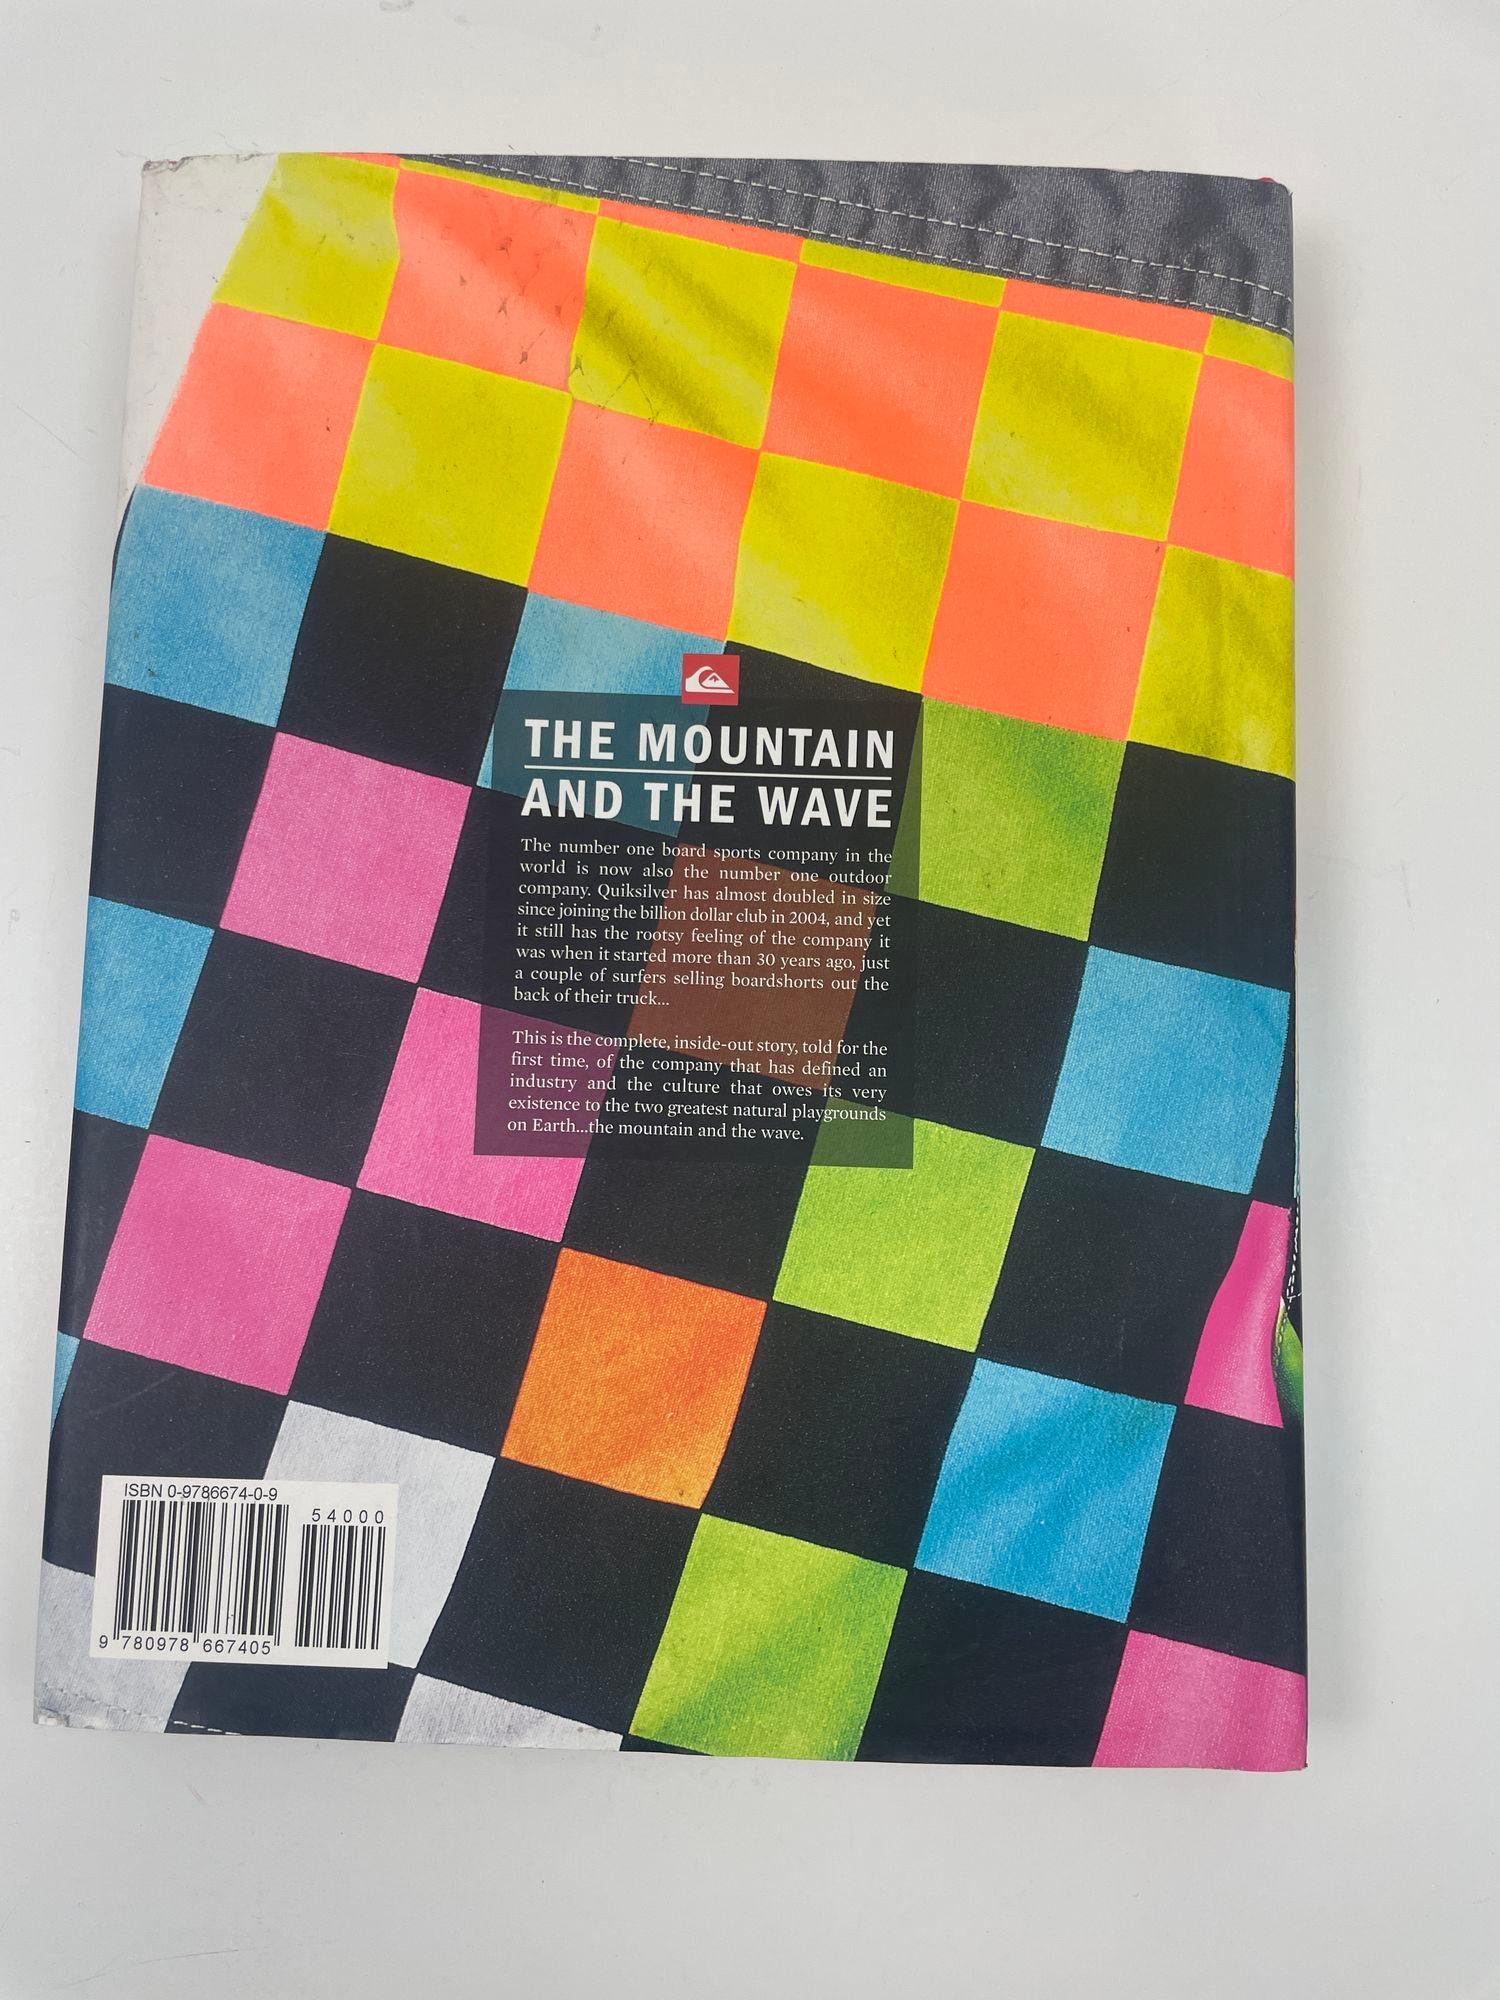 La montagne et la vague : The Quiksilver Story Hardcover Book 1er janvier 2006 par Phil Januari.
Le très attendu livre en couleur de 320 pages de Quiksilver 